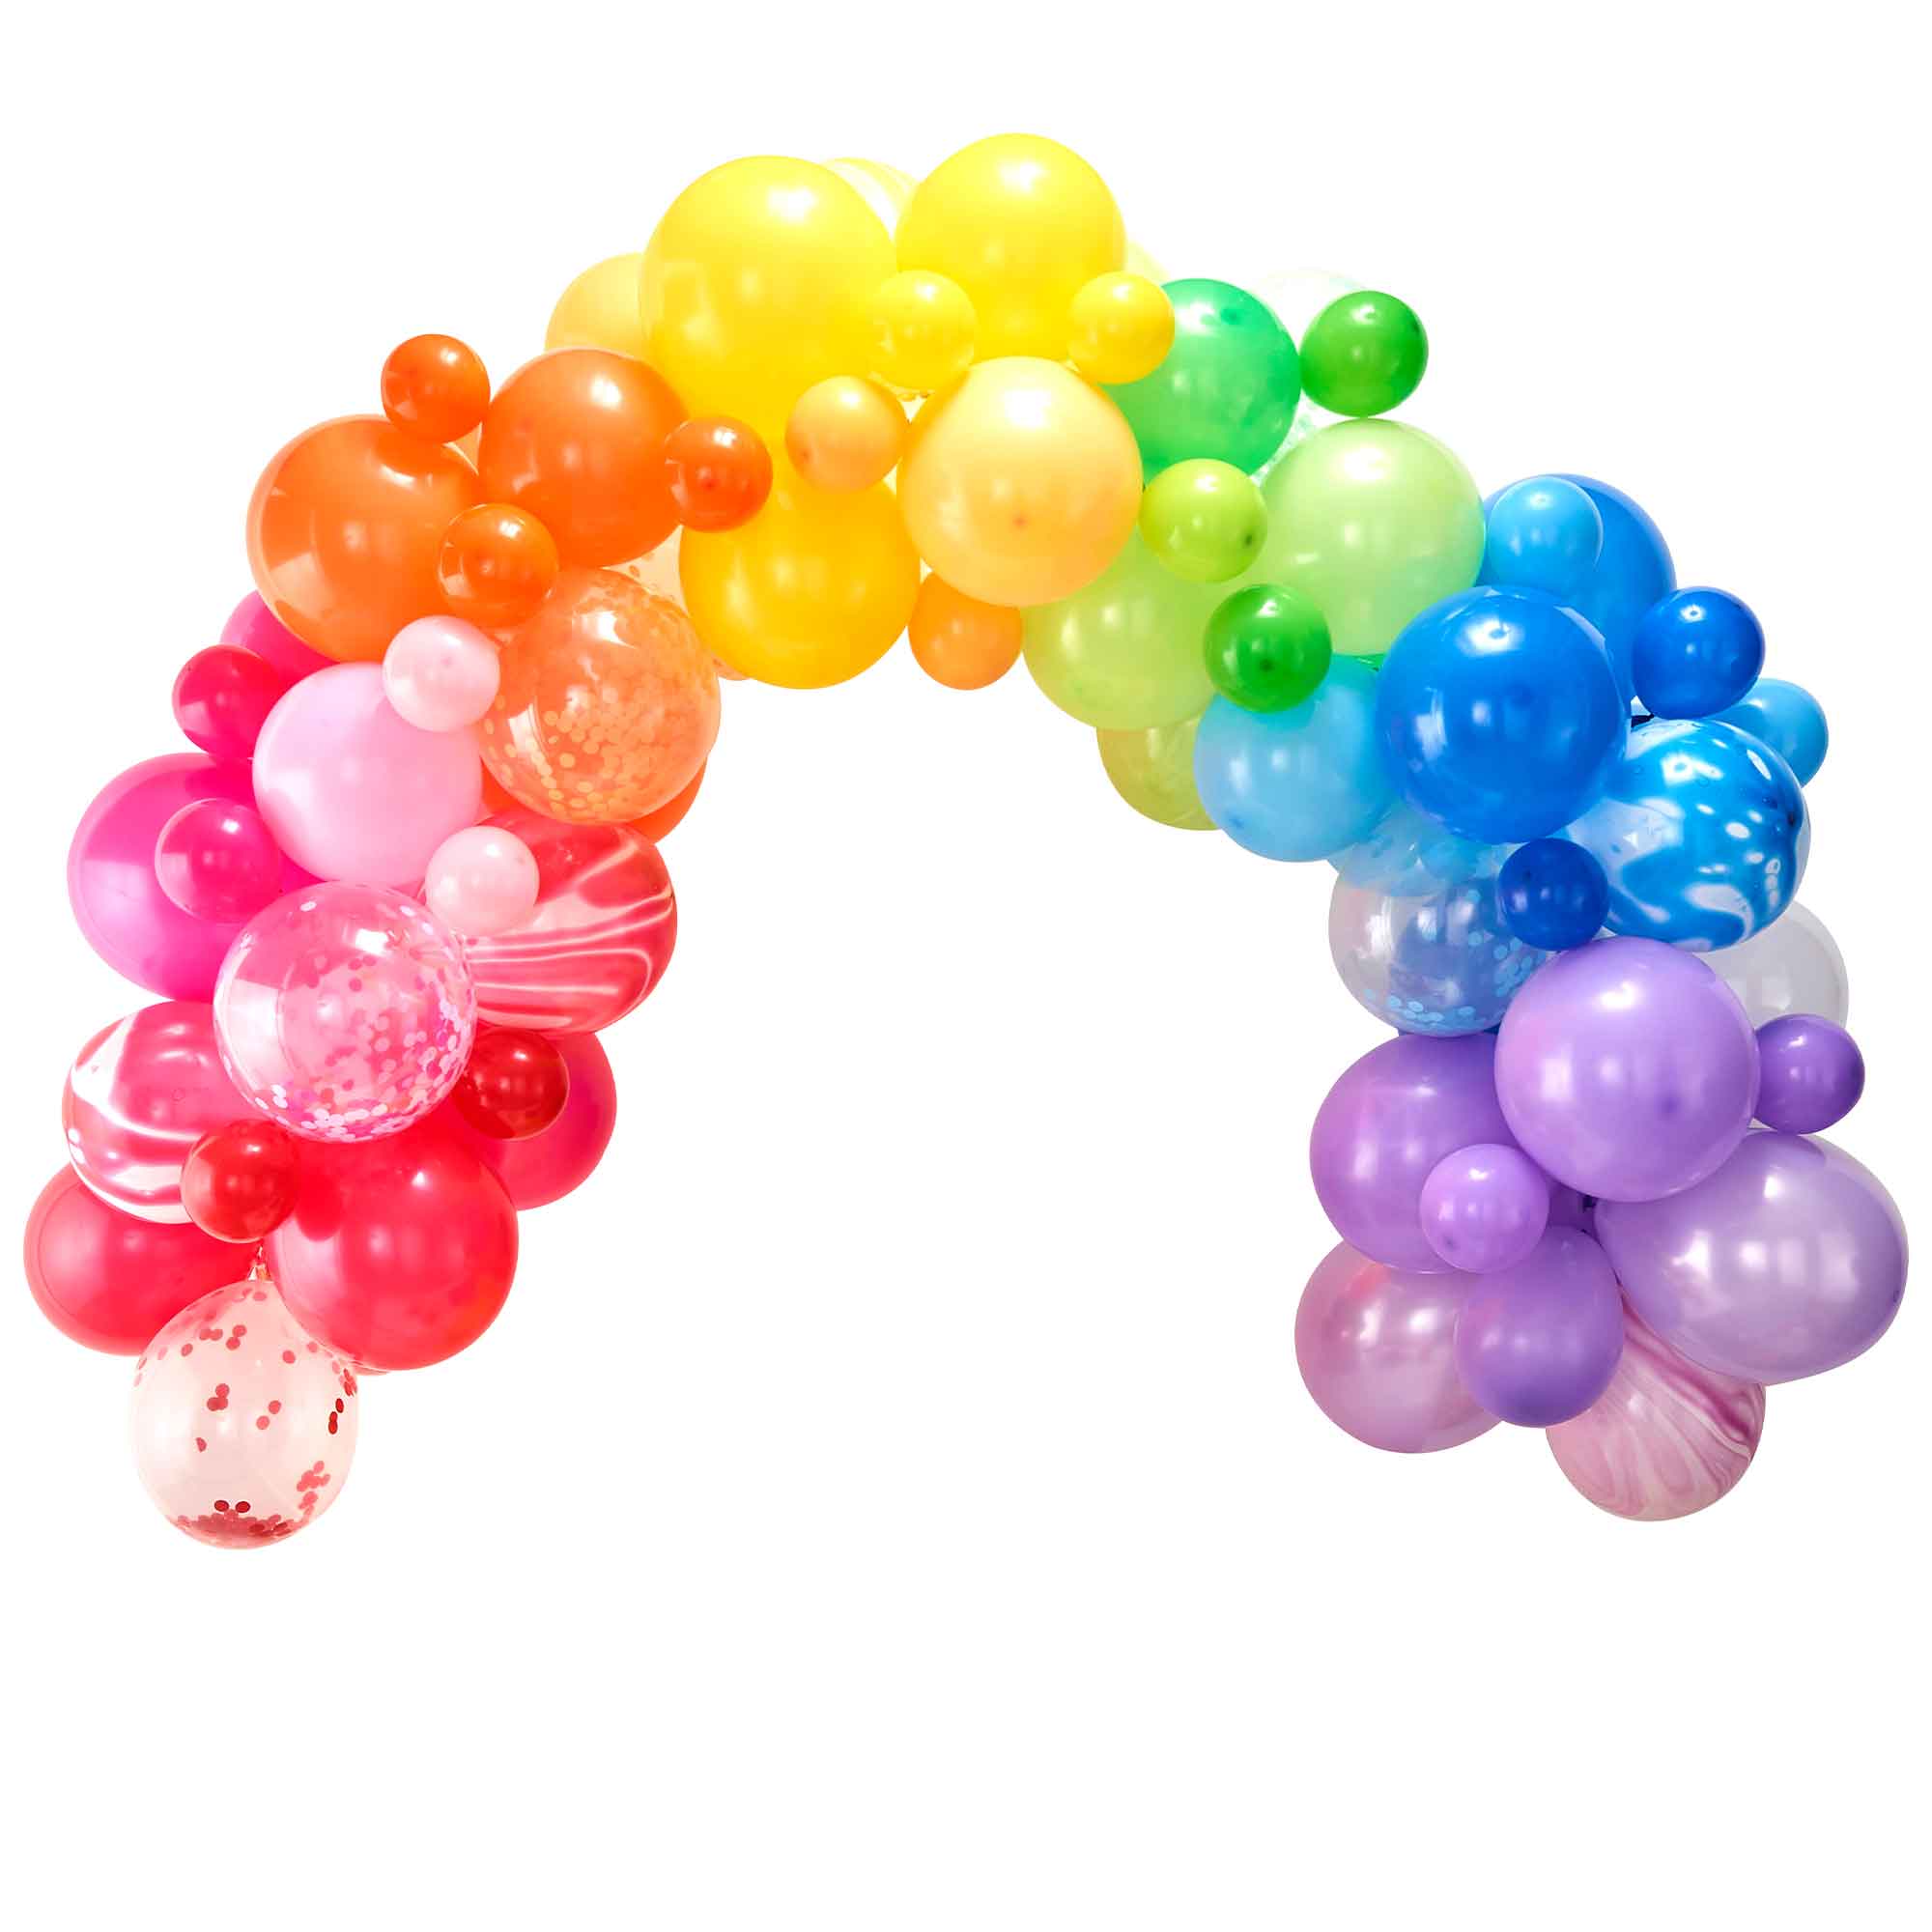 Balloon Arch Rainbow with 85 Balloons